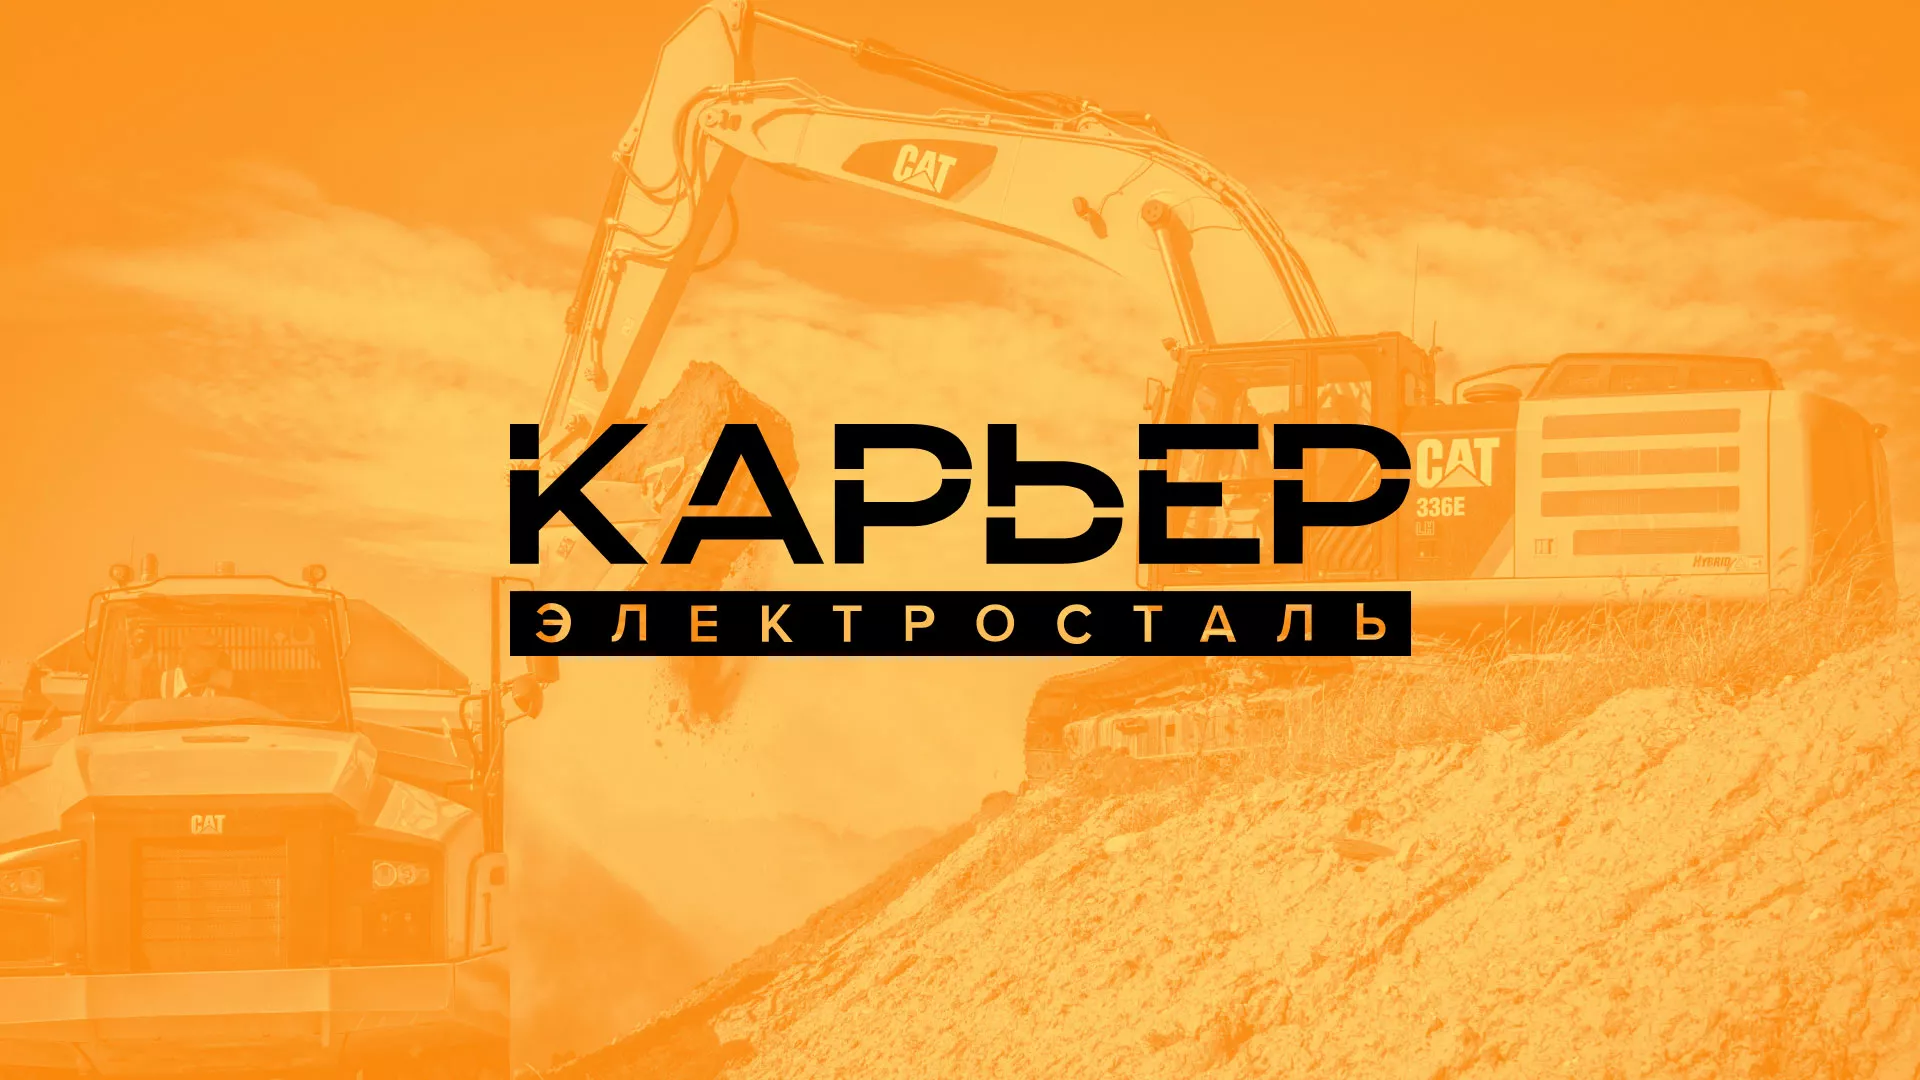 Разработка сайта по продаже нерудных материалов «Карьер» в Светогорске